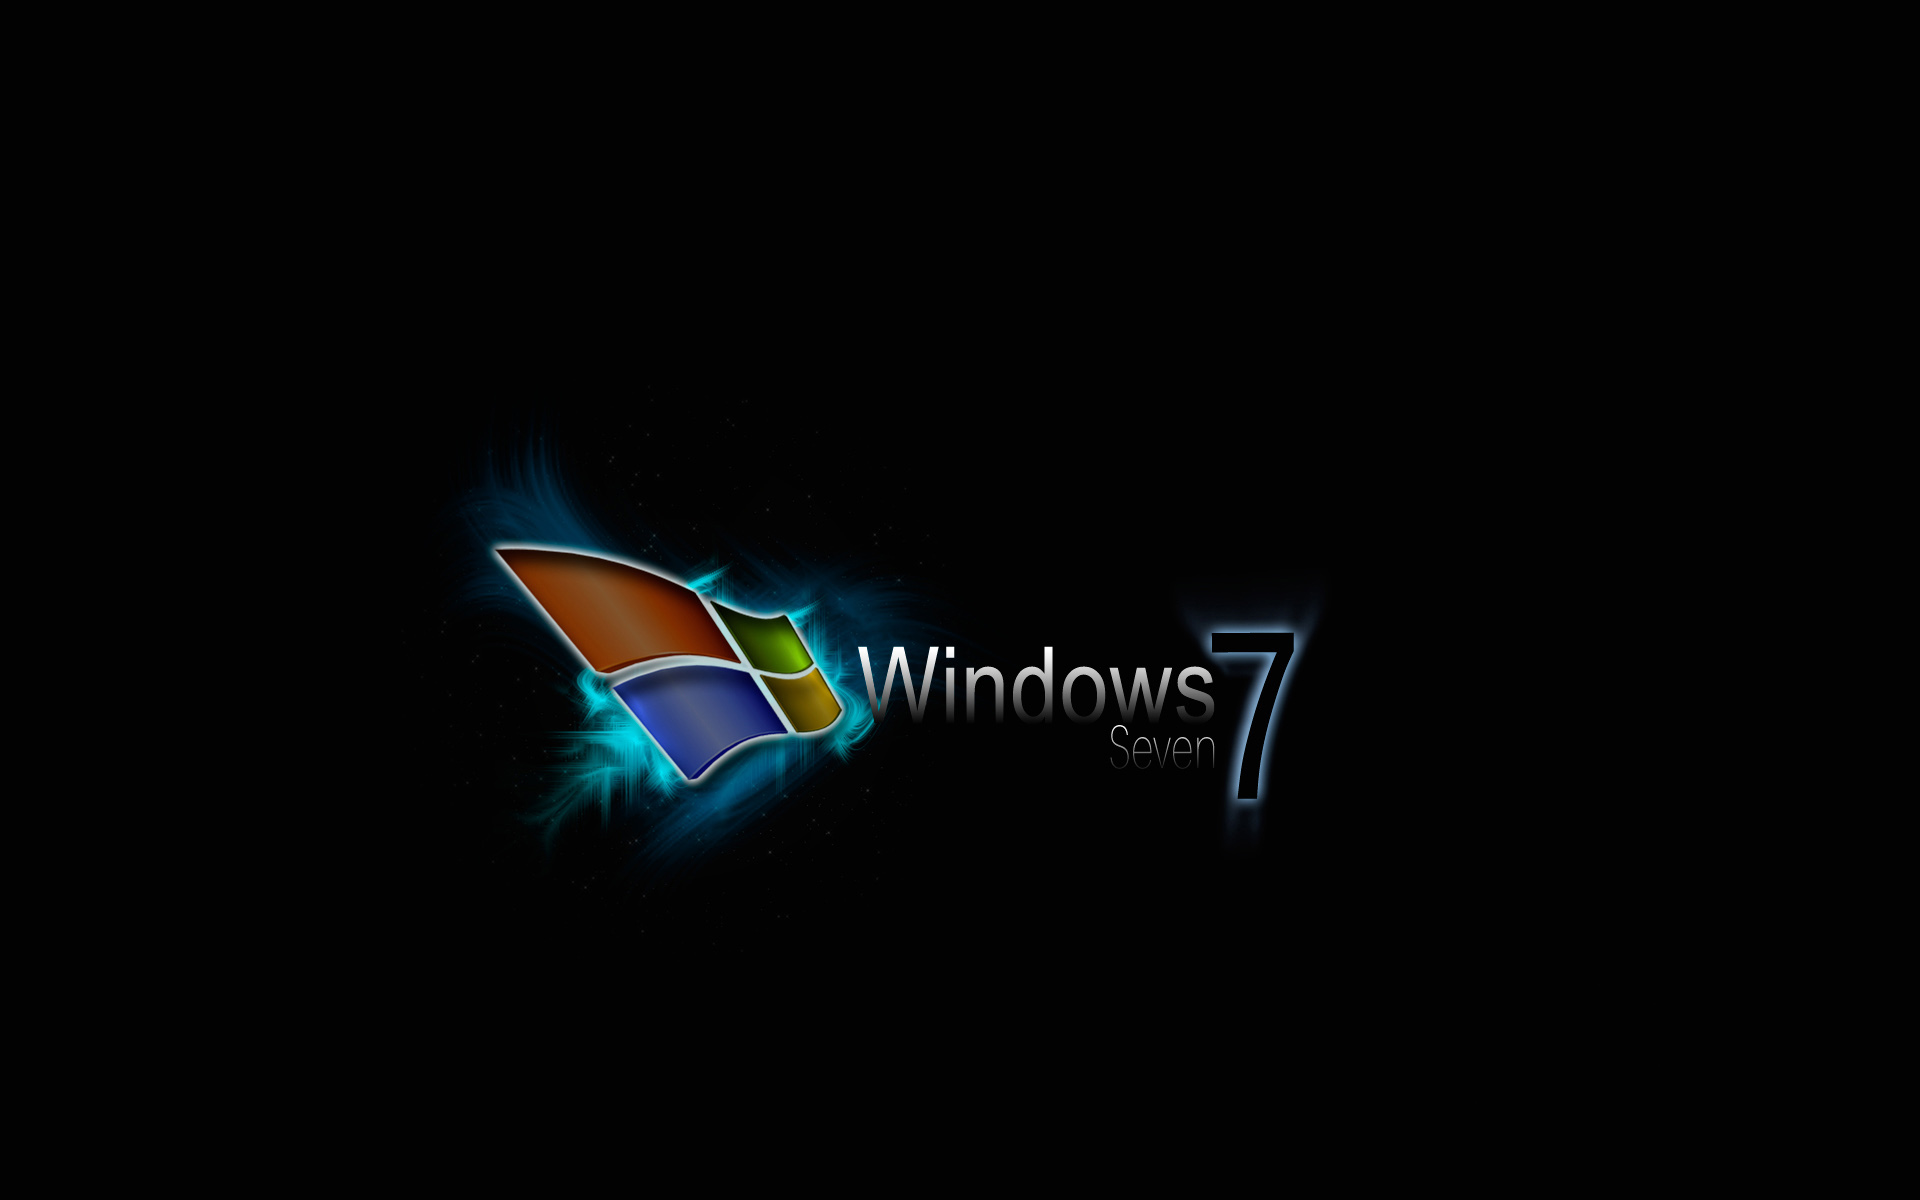 Hình nền Windows 7 đẹp là những tác phẩm nghệ thuật thu hút mọi ánh nhìn. Với màu sắc tươi sáng, kiểu dáng độc đáo và độ phân giải cao, hình nền Windows 7 đẹp sẽ mang lại cho bạn một trải nghiệm tuyệt vời hàng ngày.